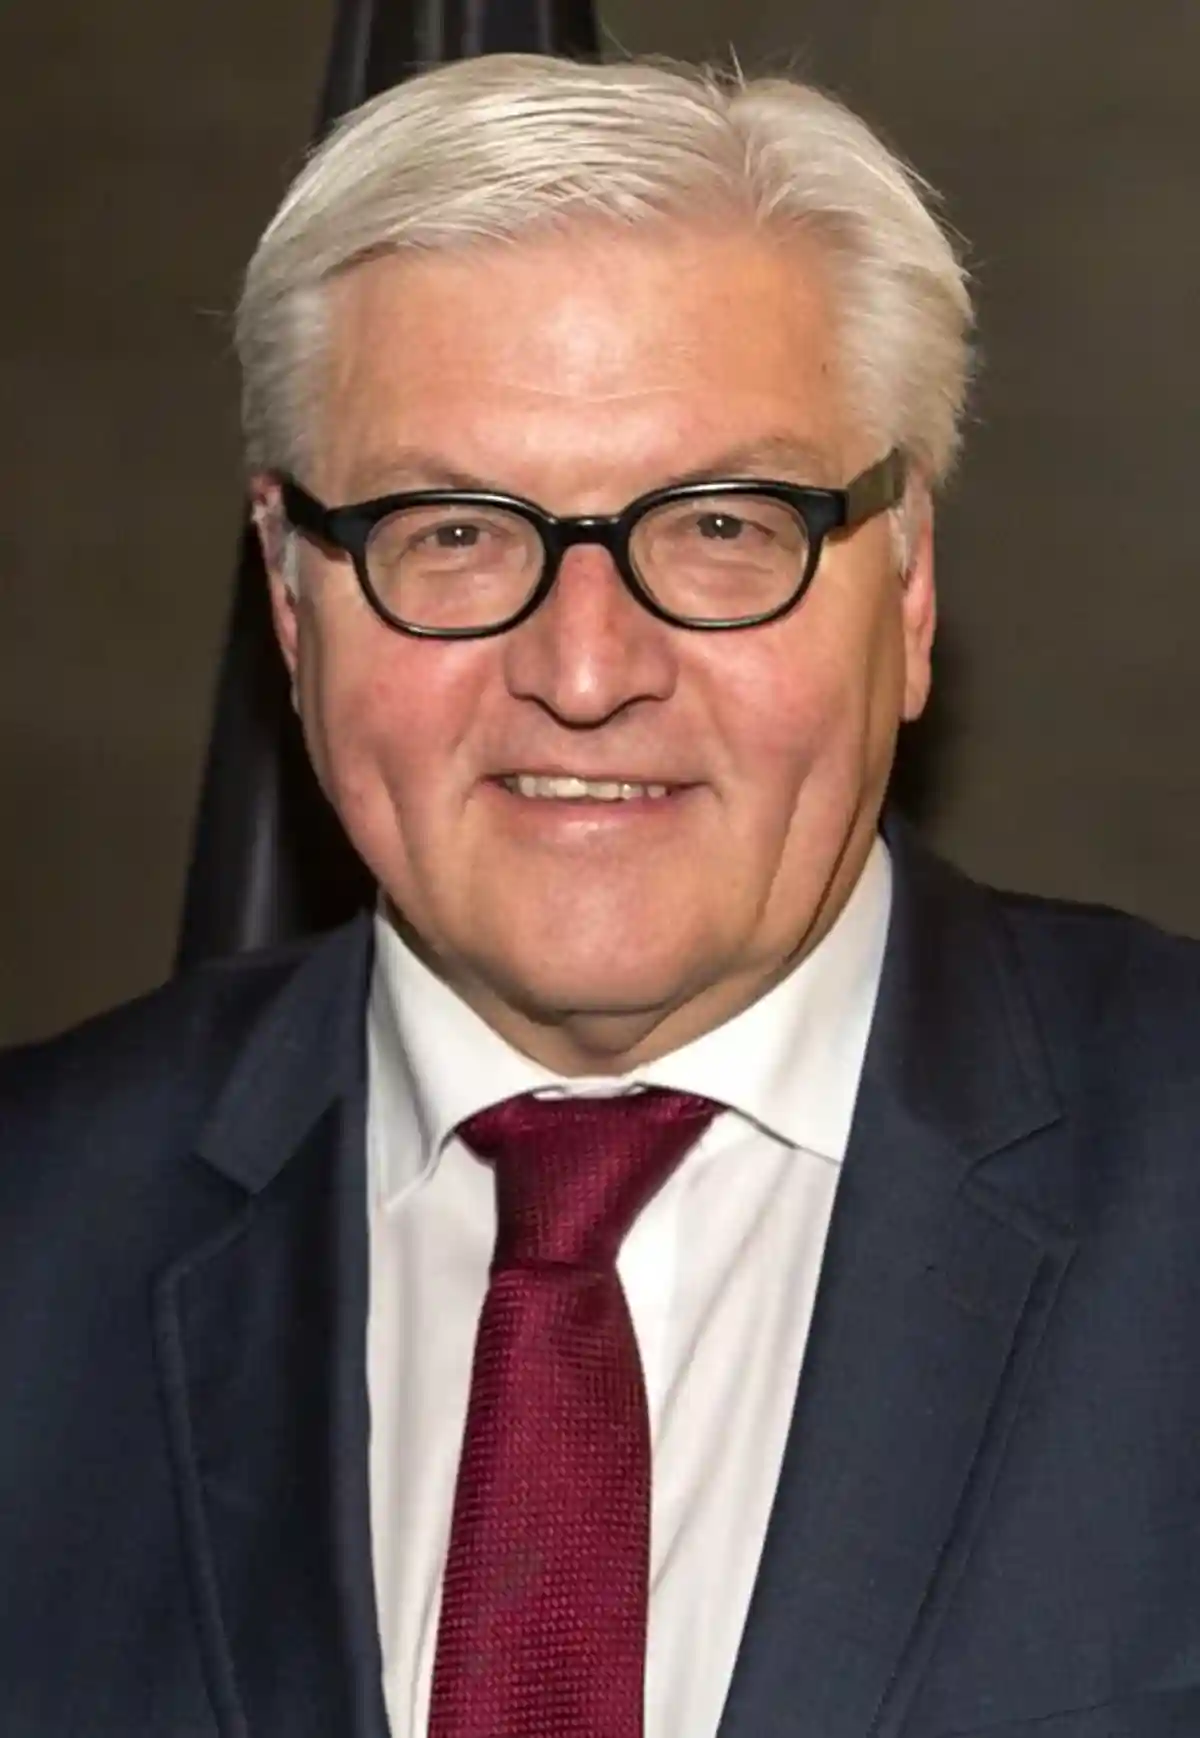 немецкий политик Франк-Вальтер Штайнмайер фото